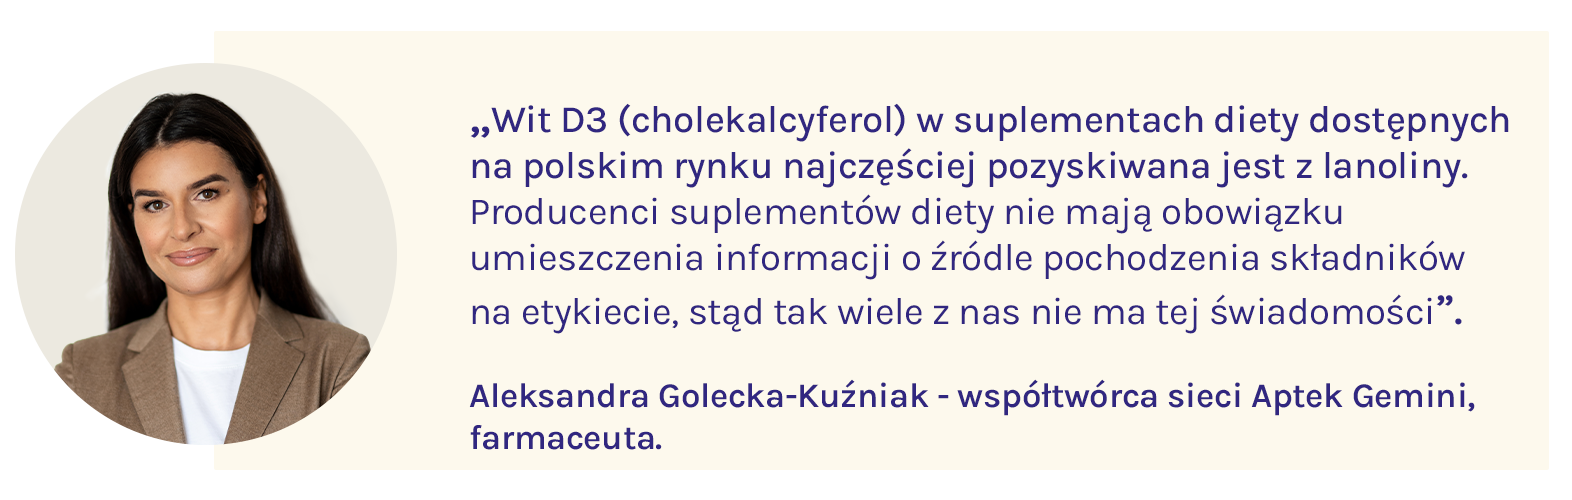 Aleksandra Golecka-Kuźniak mówi o tym, że witamina D3 w suplementach diety najczęściej pochodzi z lanoliny